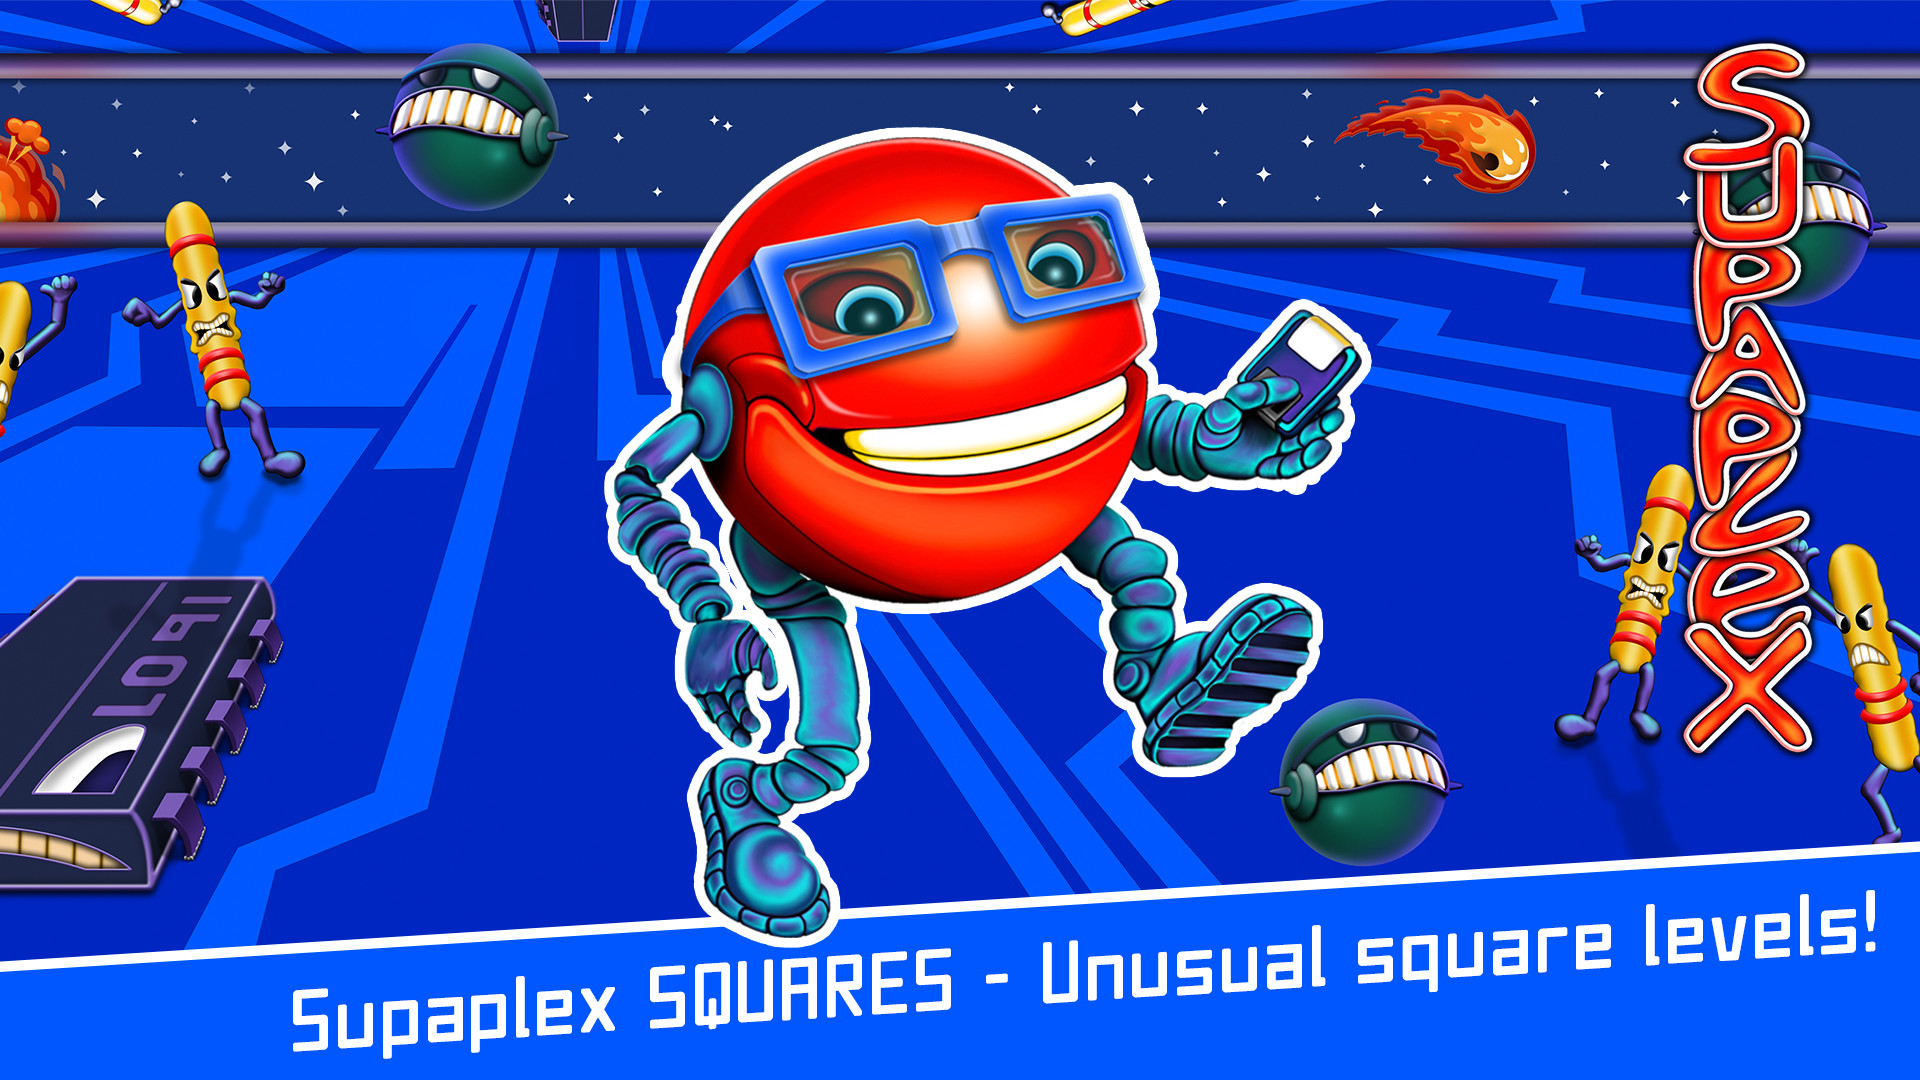 Supaplex SQUARES Featured Screenshot #1